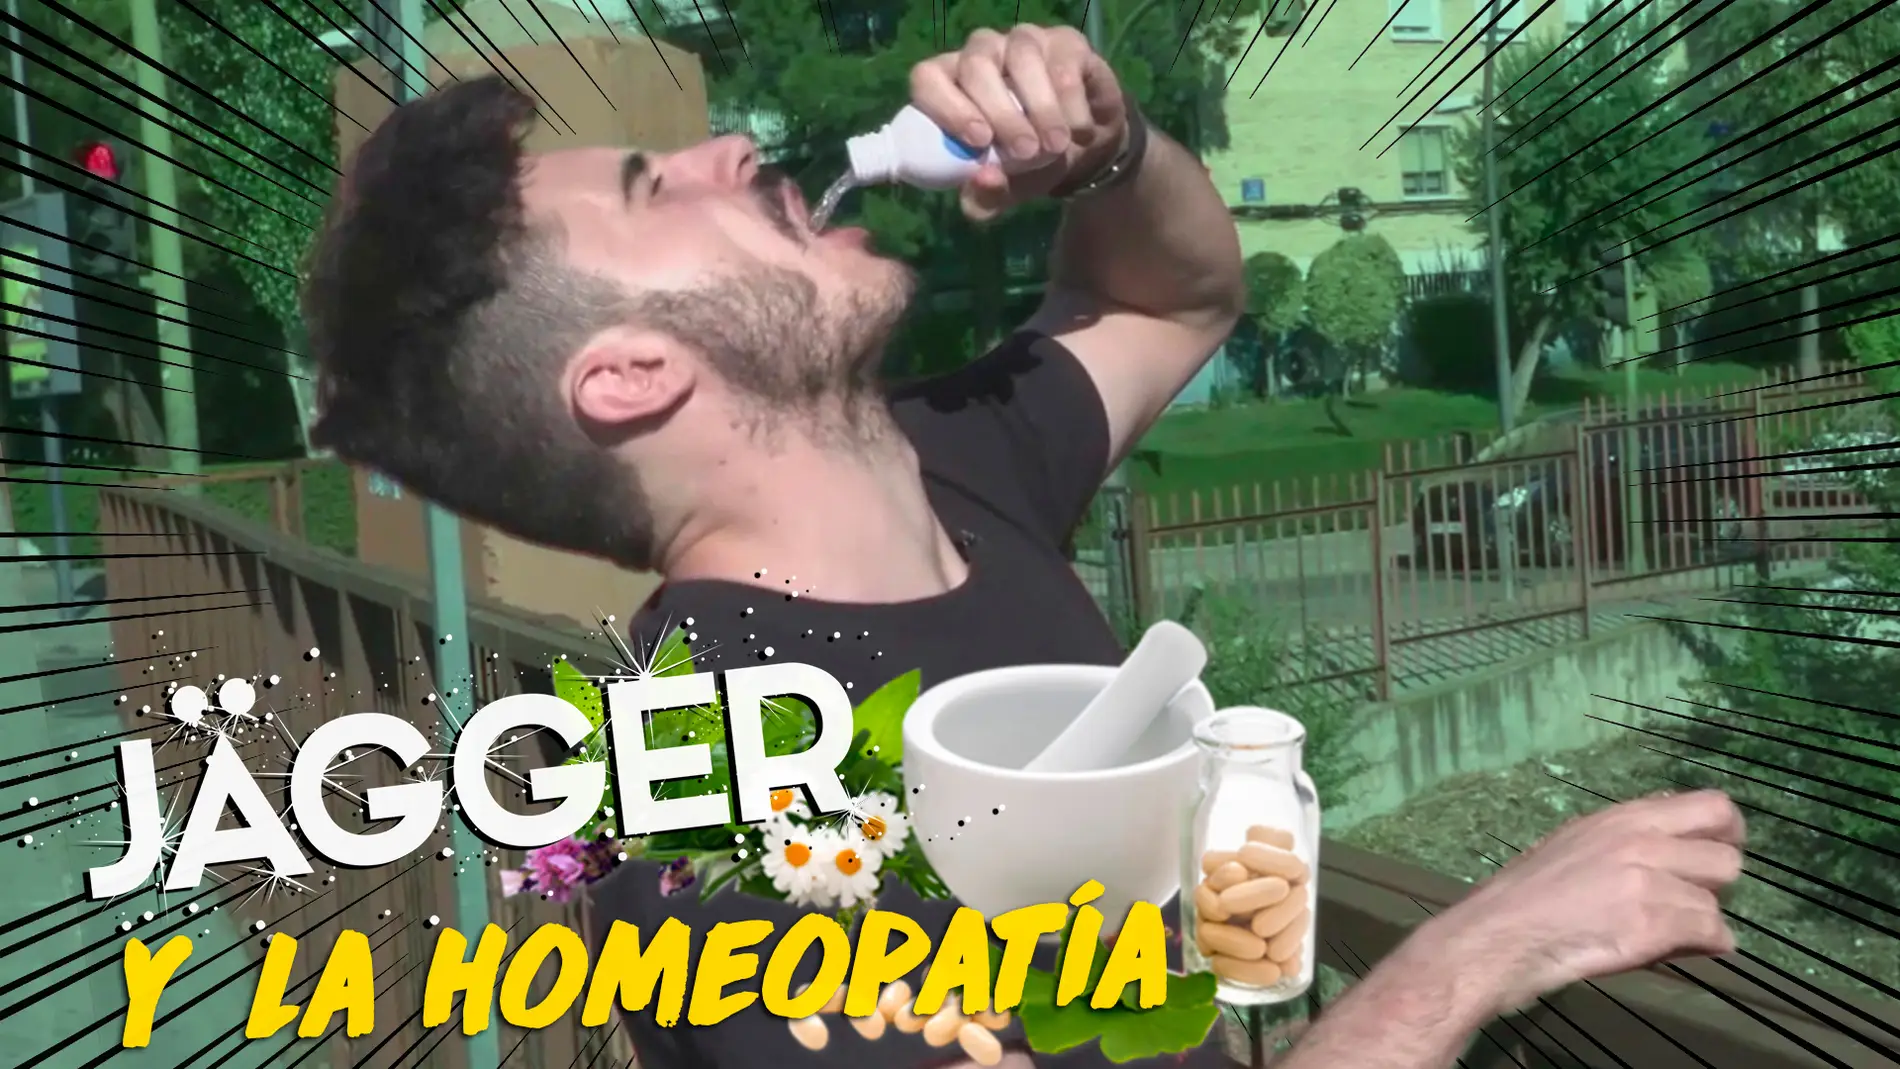 Míster Jägger - Jägger y la homeopatía